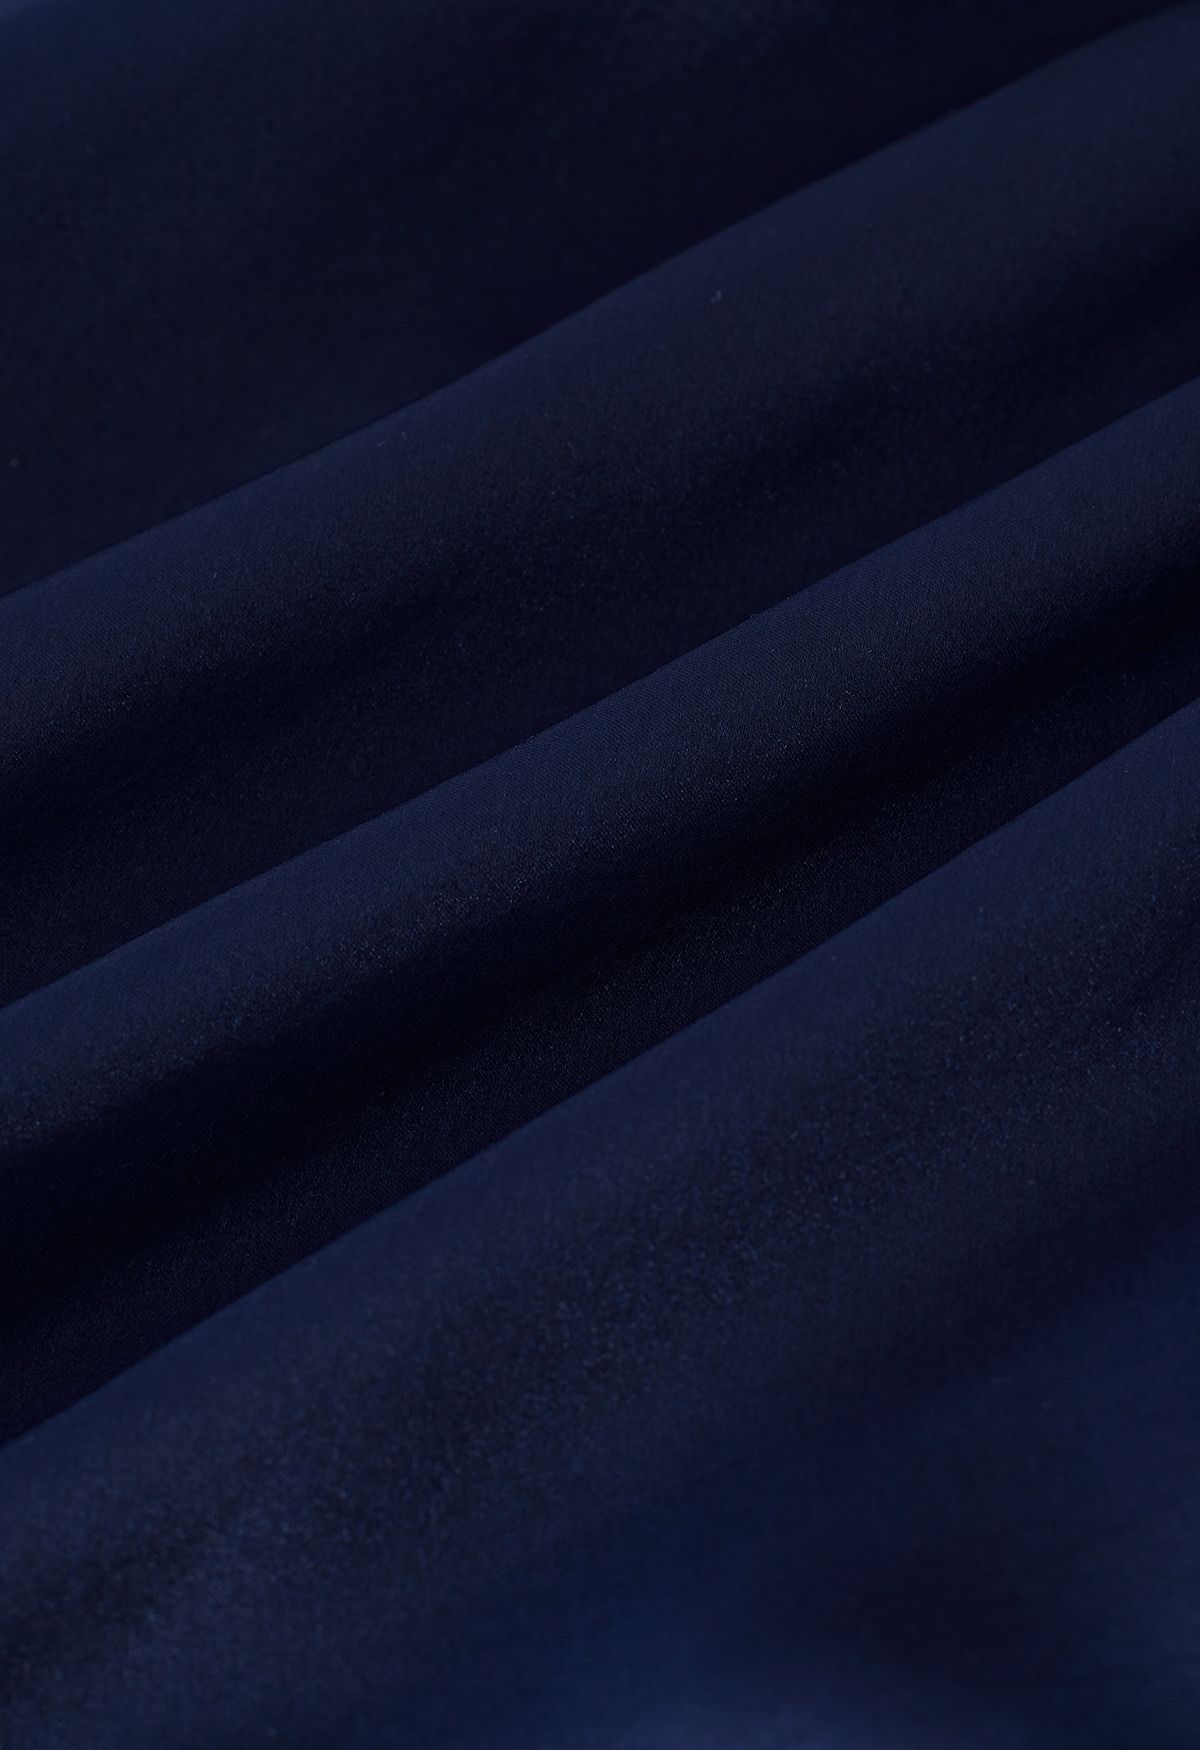 Wunderschönes Kleid mit Rüschen und durchsichtigem Netz mit Schleifenausschnitt in Marineblau